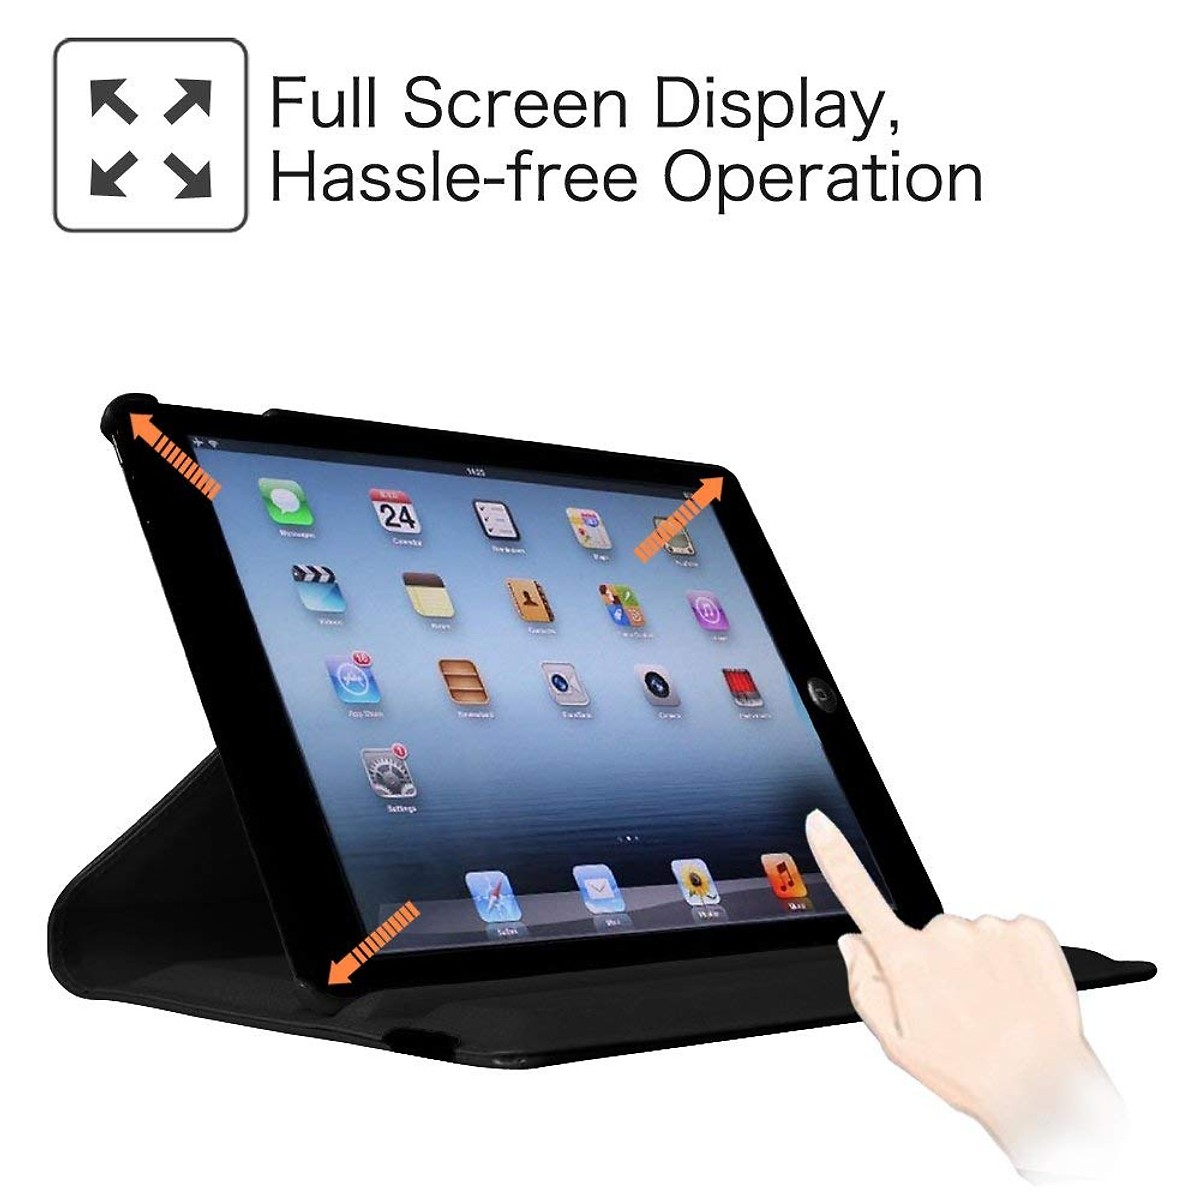 Bao da cho iPad 10.2 2019 / iPad 10.5 inch / iPad gen 7 gen 8 gen 9 / iPad Air 3 10.5 inch xoay 360 độ hiệu HOTCASE (chống bụi chấm thấm tiện lợi, cơ chế smartsleep thông minh) - Hàng nhập khẩu